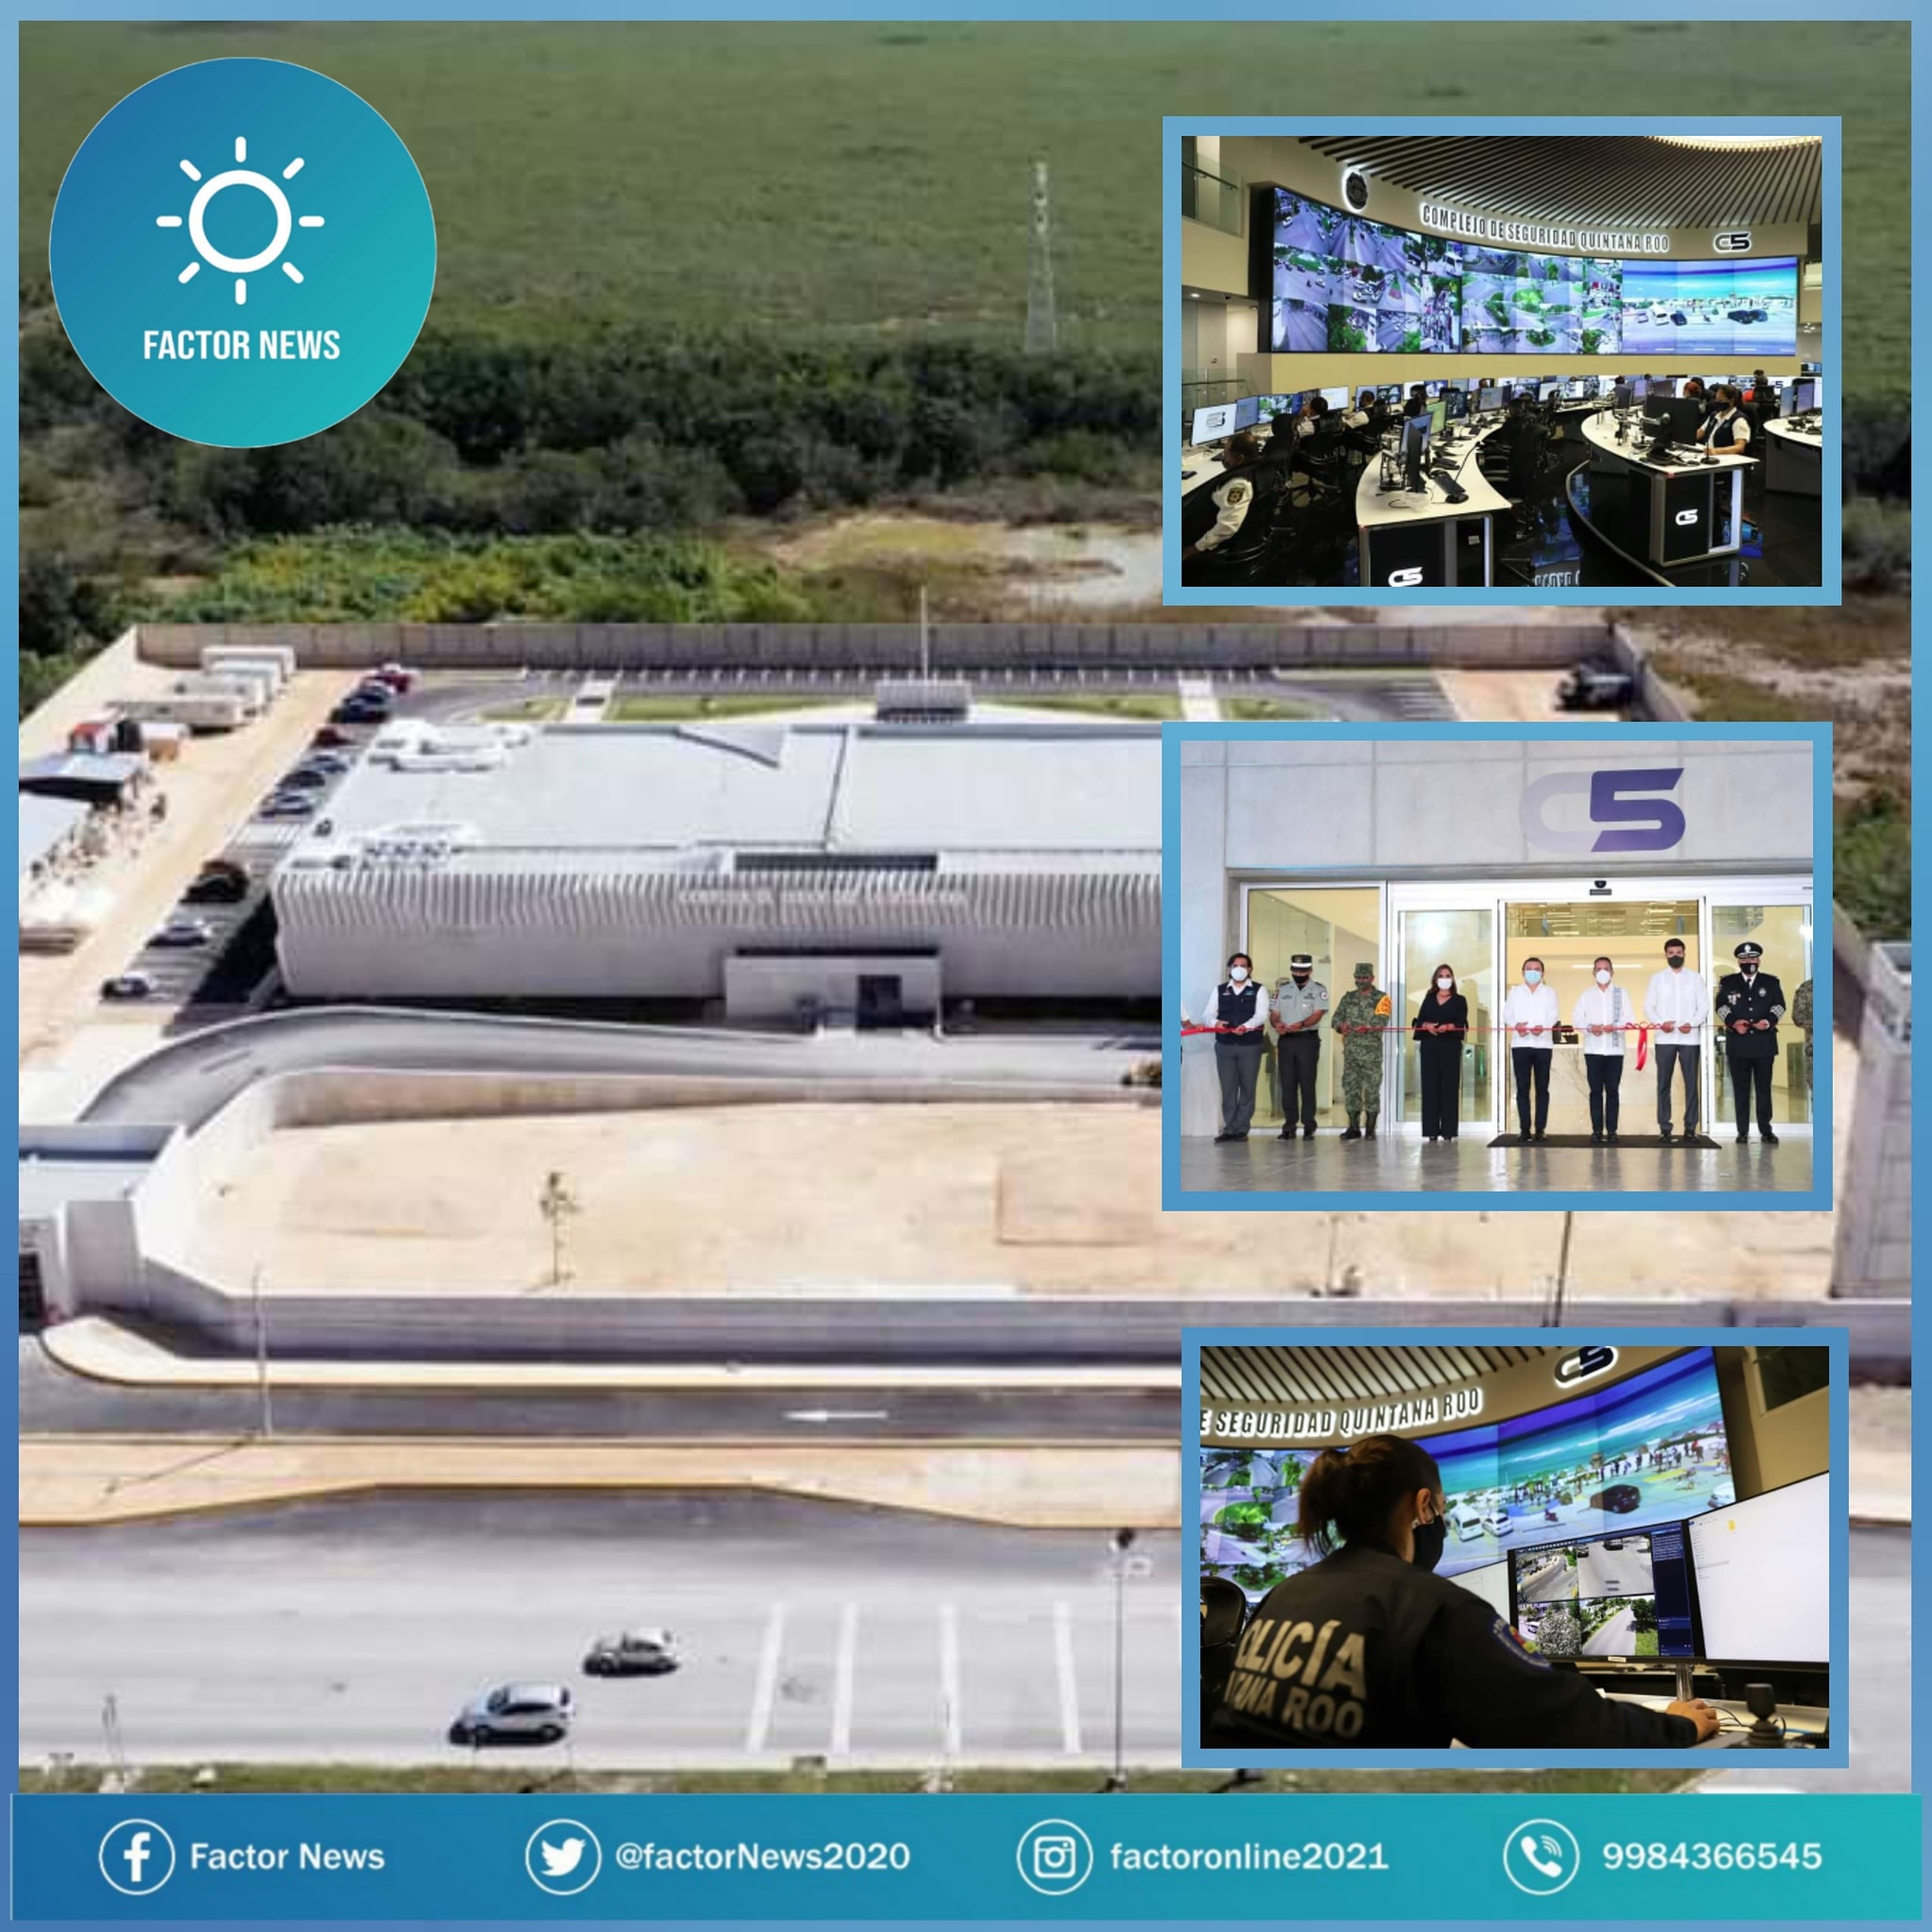 Oficialmente inaugurado el Centro de Mando C5 con 2 mil 200 cámaras de vigilancia.